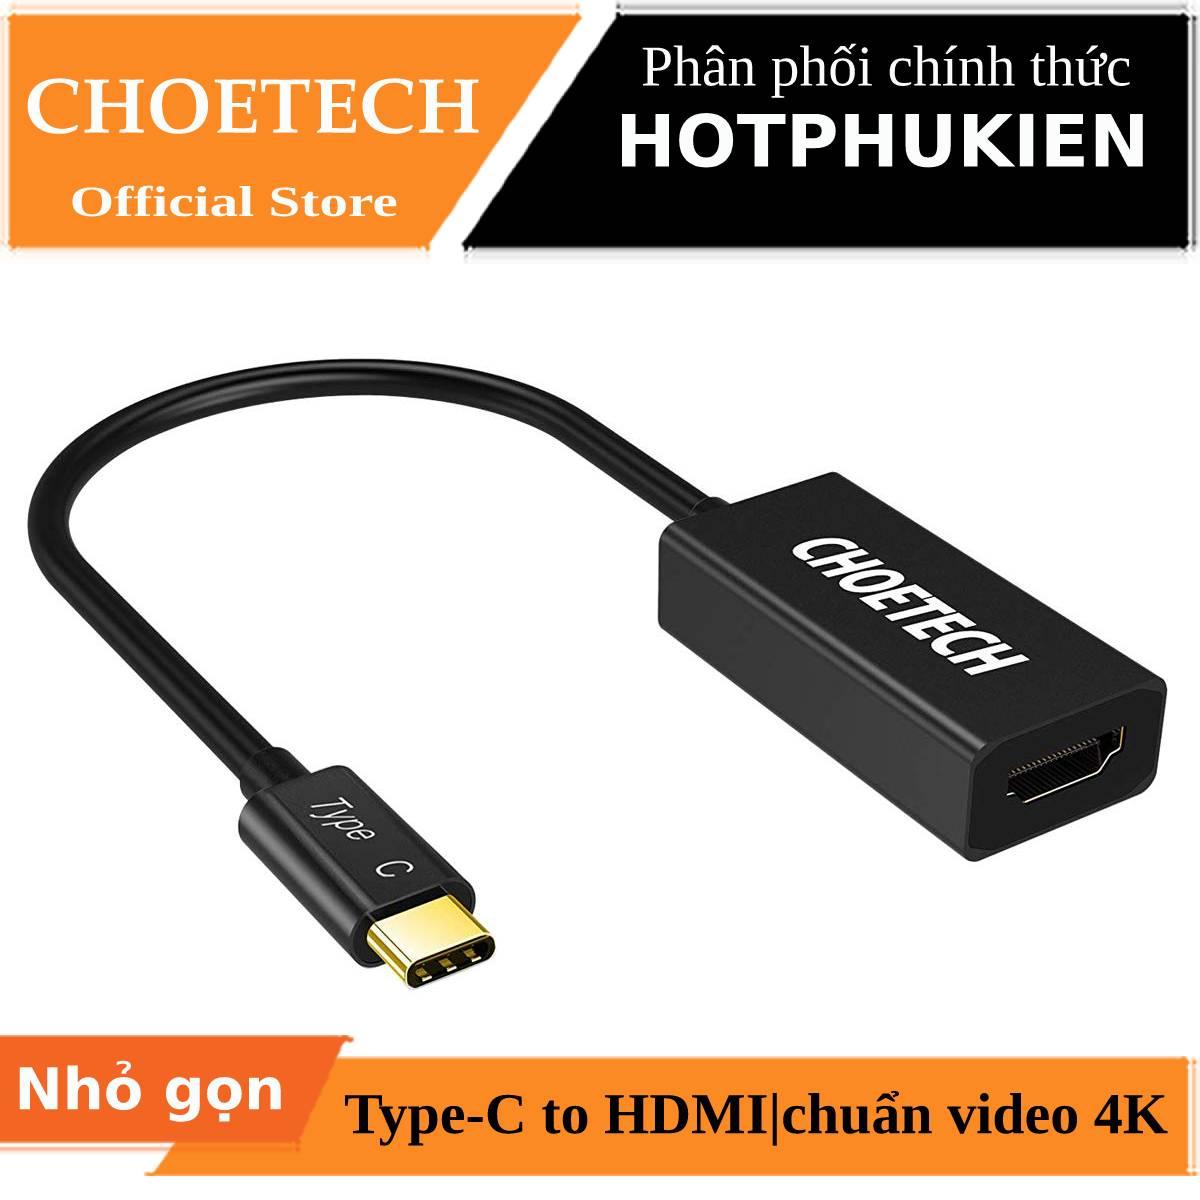 Đầu chuyển Type-C ra cổng HDMI chuẩn 4K hiệu CHOETECH HUB-H05